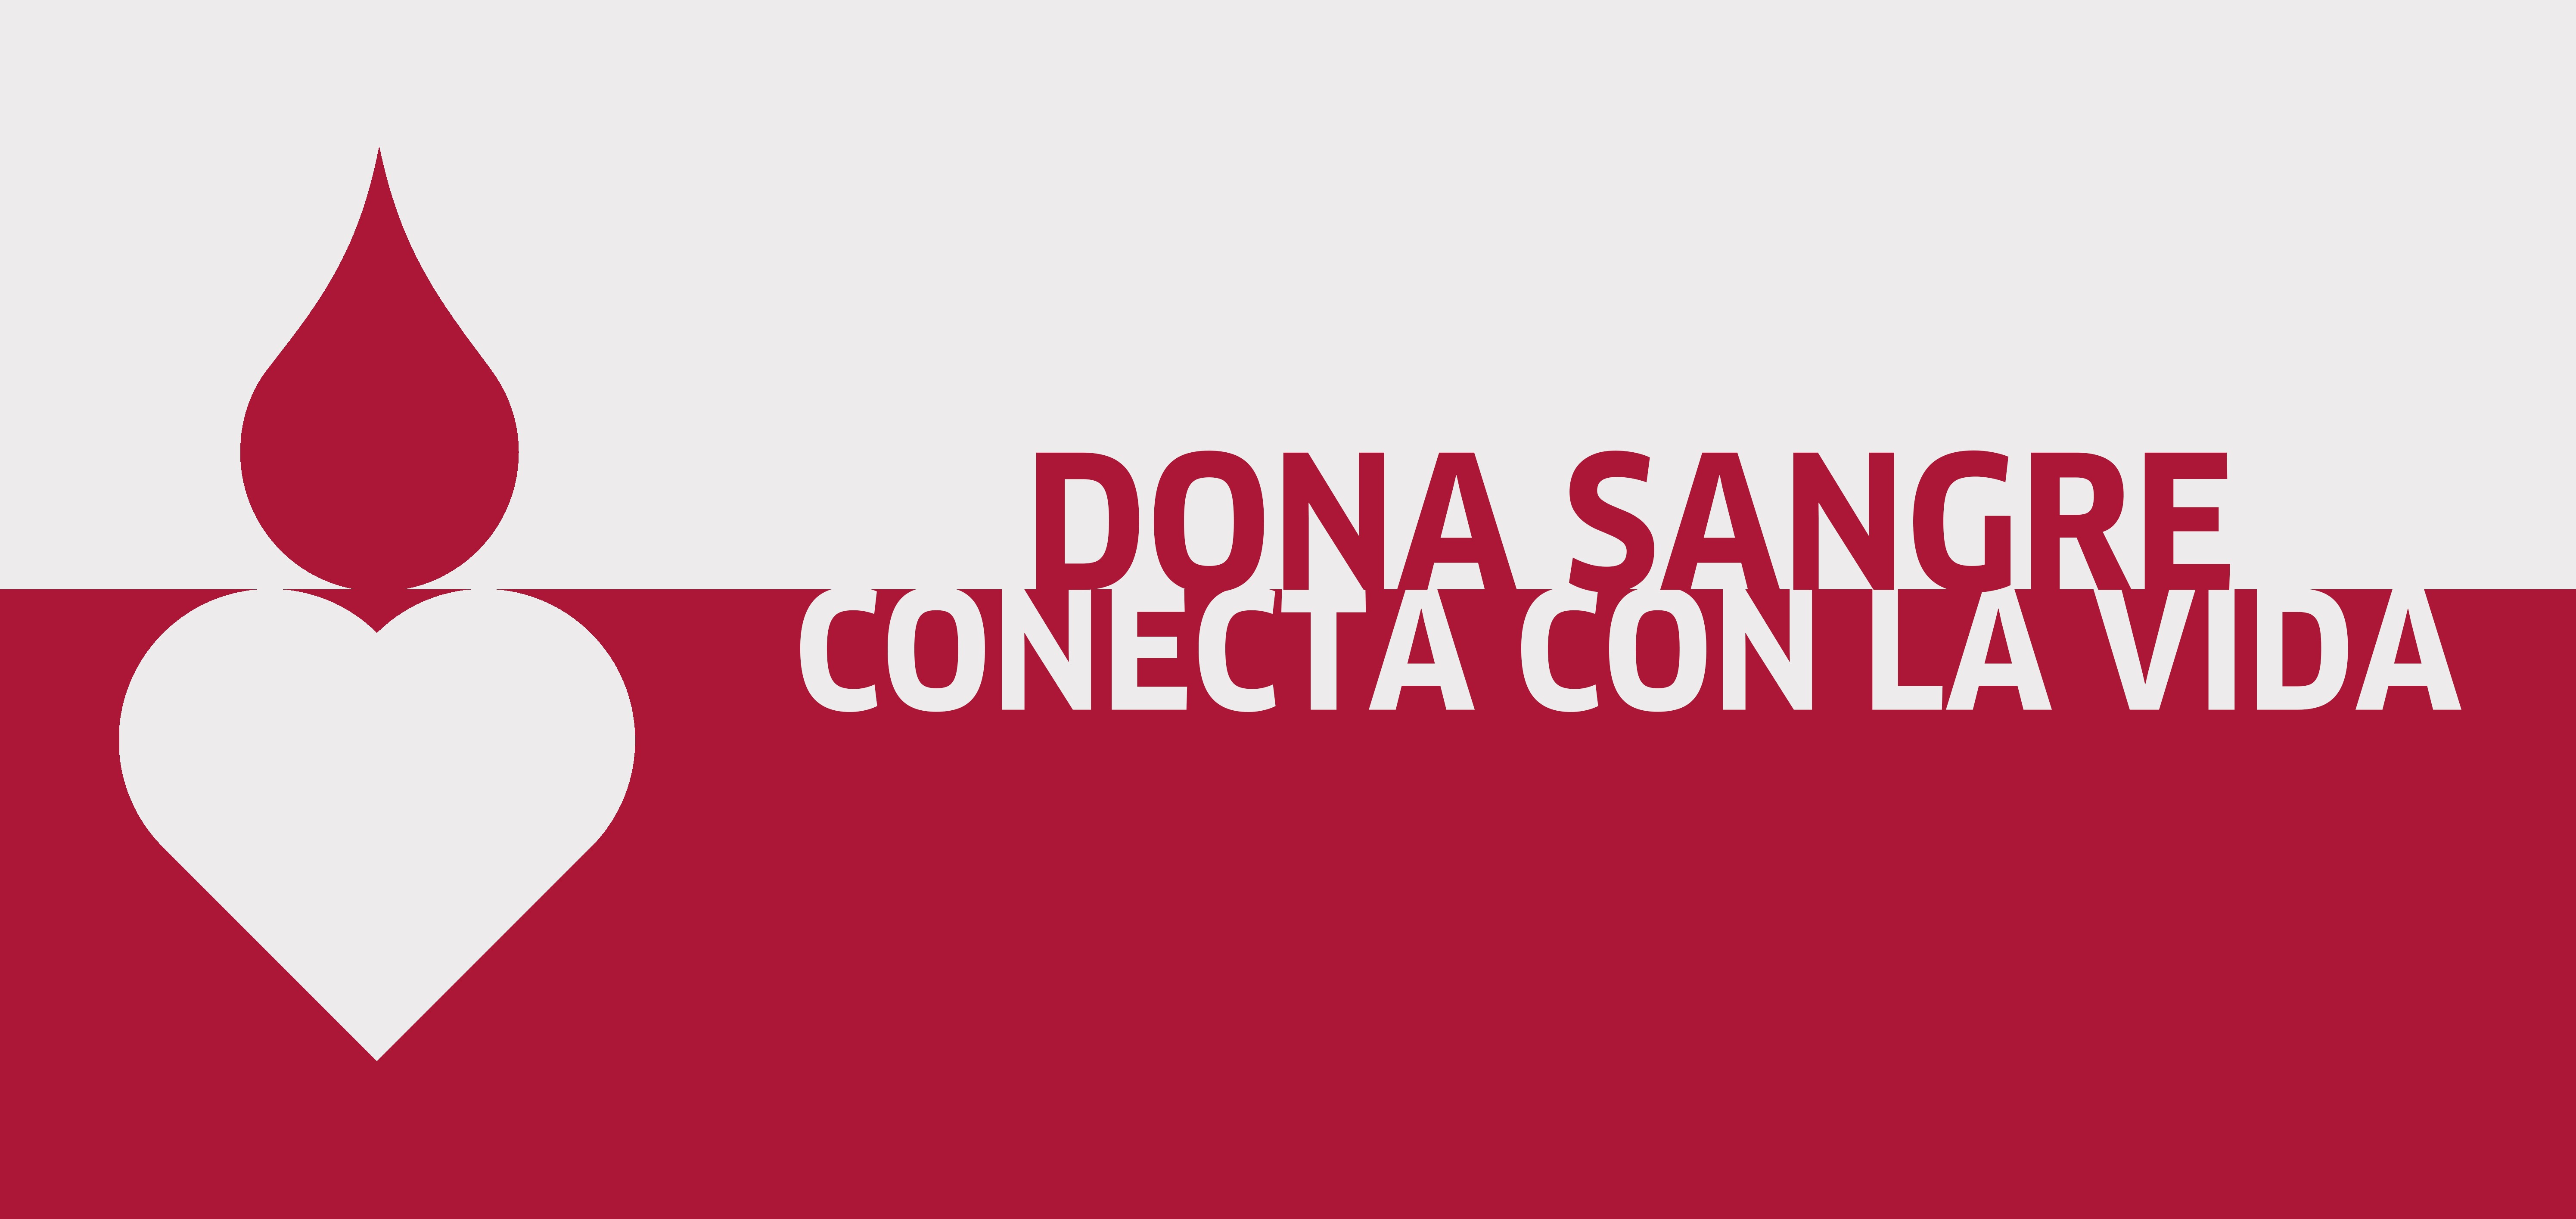 La Rioja celebra el Día Mundial del Donante de Sangre agradeciendo el compromiso de la sociedad riojana y lanza la campaña ‘Conecta con la vida’